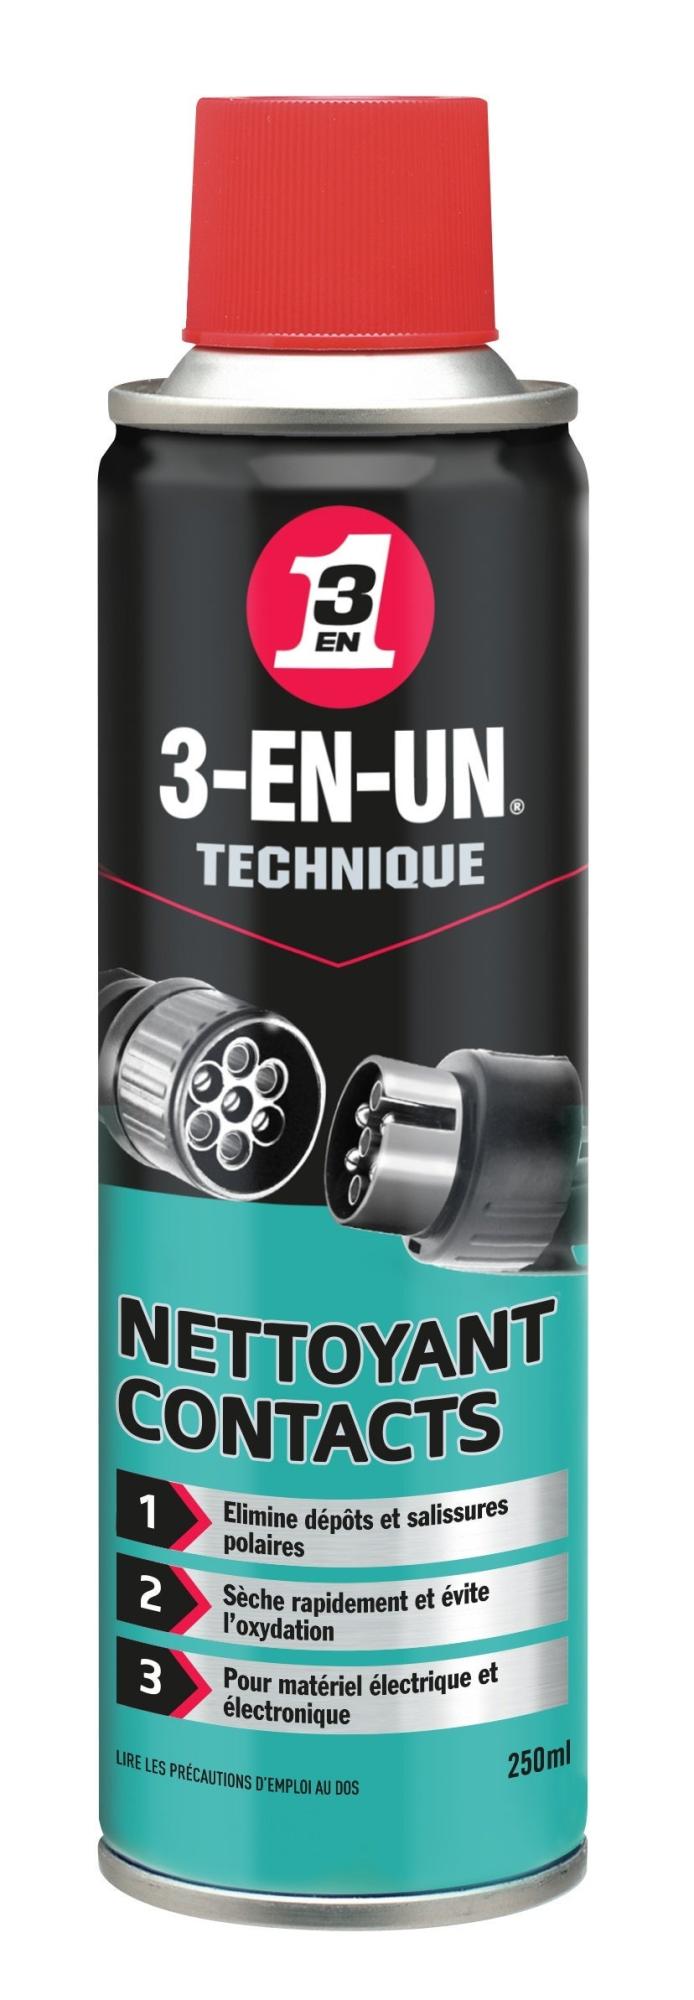 Nettoyant contacts en aérosol, 250 ml, 3-EN-UN TECHNIQUE